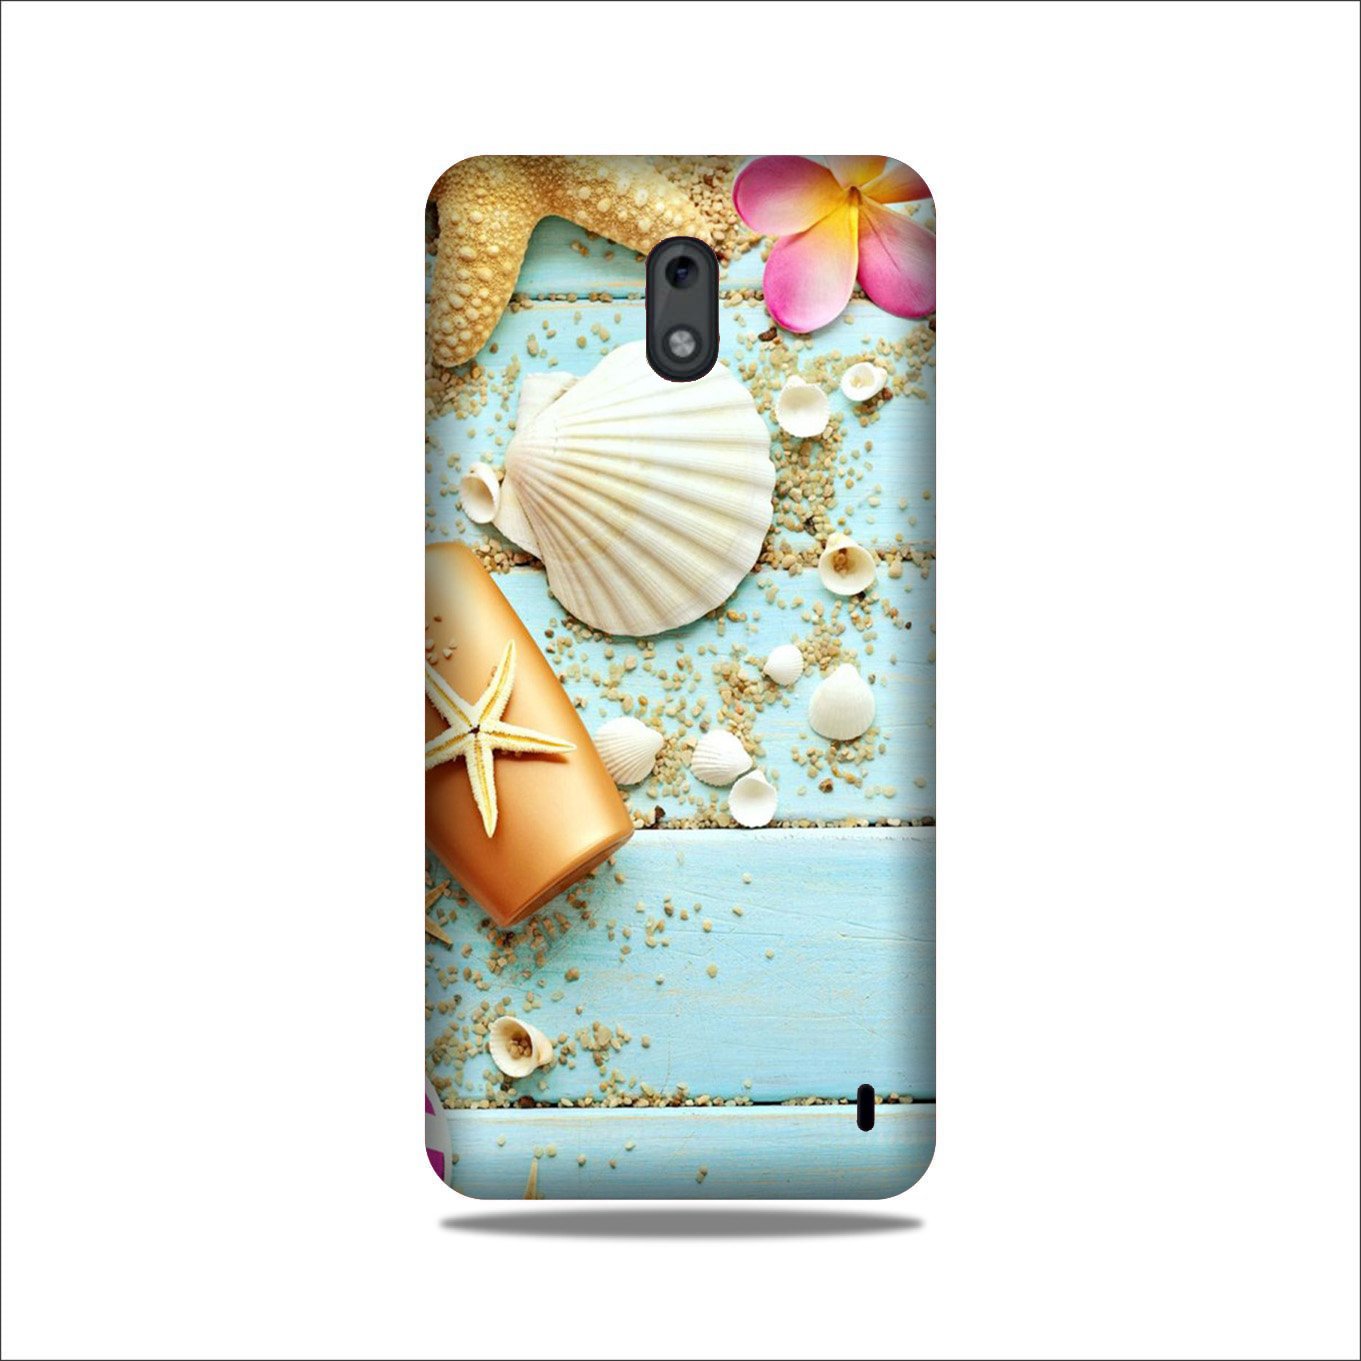 Sea Shells Case for Nokia 2